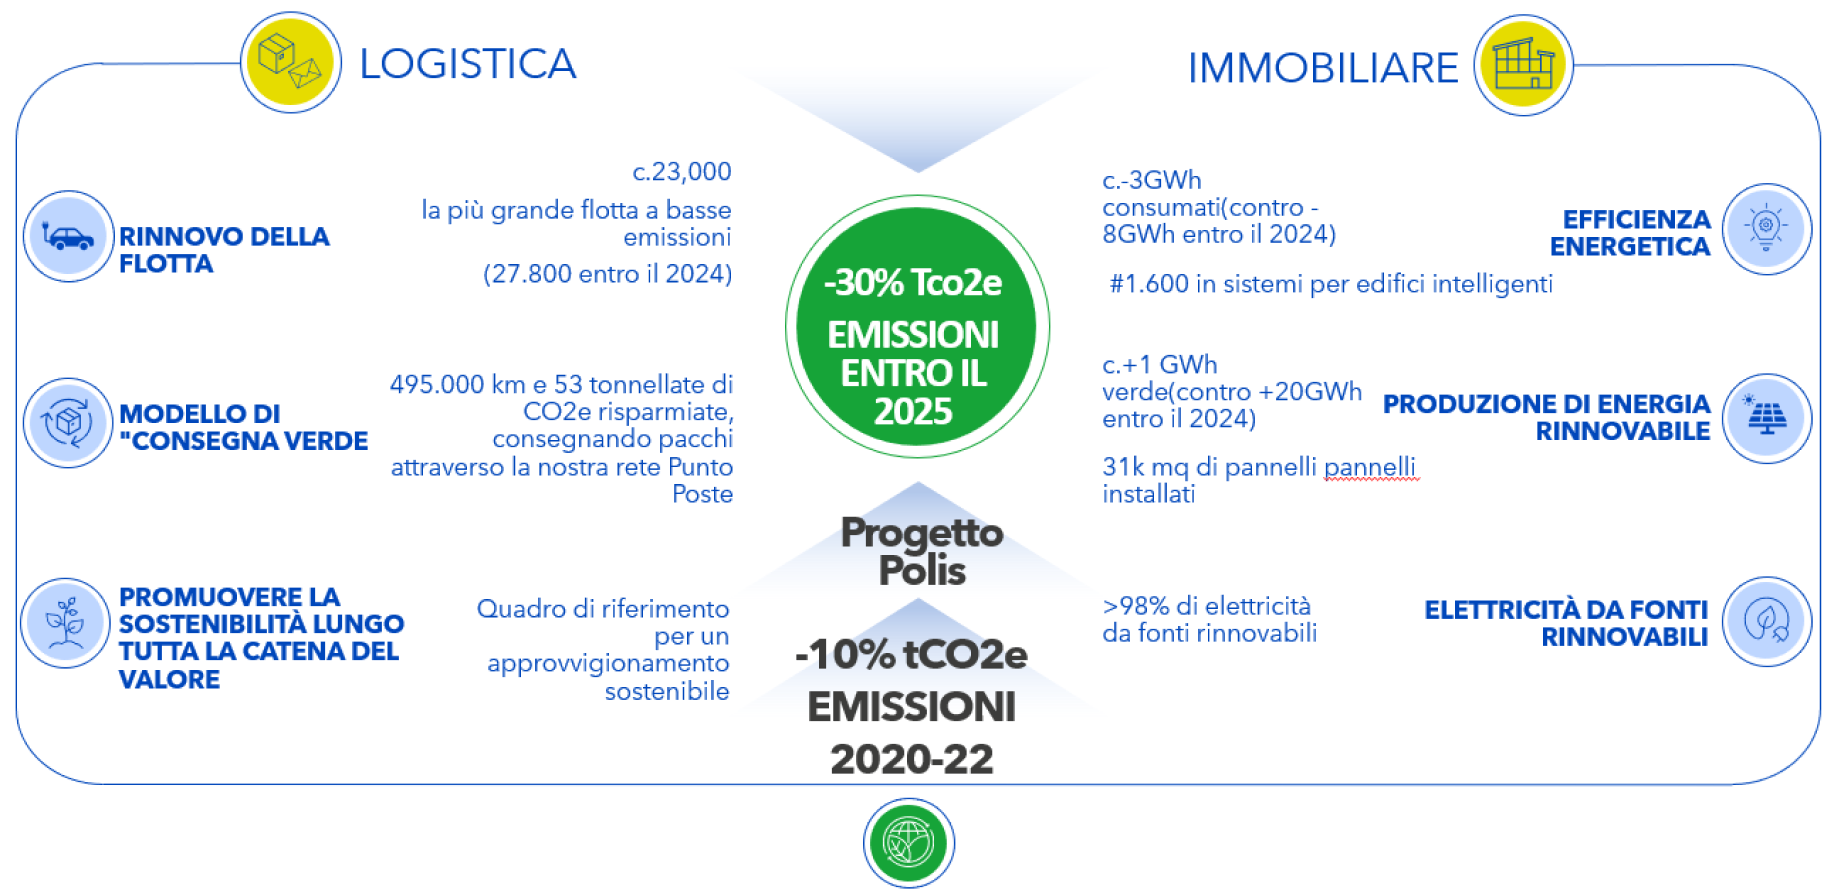 Risultati della transizione verde nel 2022: Rinnovo della flotta; Modello di consegna verde; Promuovere la sostenibilità lungo la catena del valore; Efficienza energetica; Produzione di energia rinnovabile; Elettricità da fonti rinnovabili